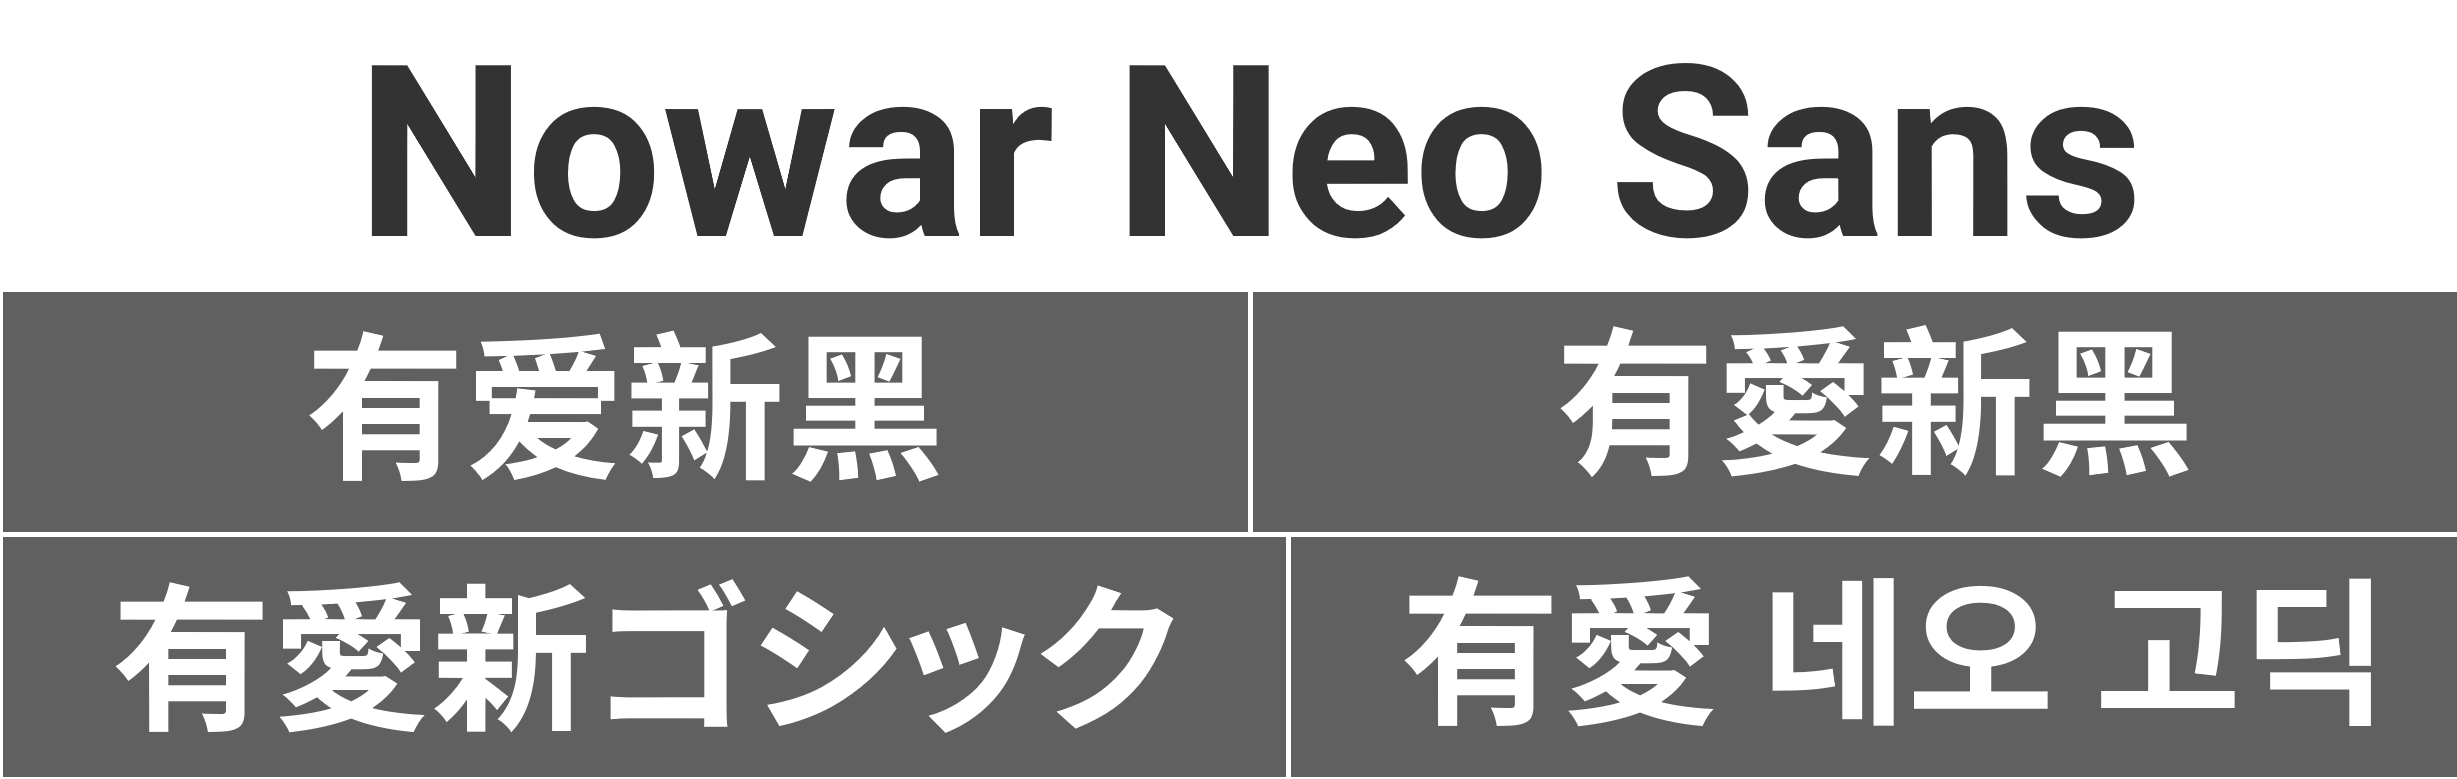 Nowar Neo Sans